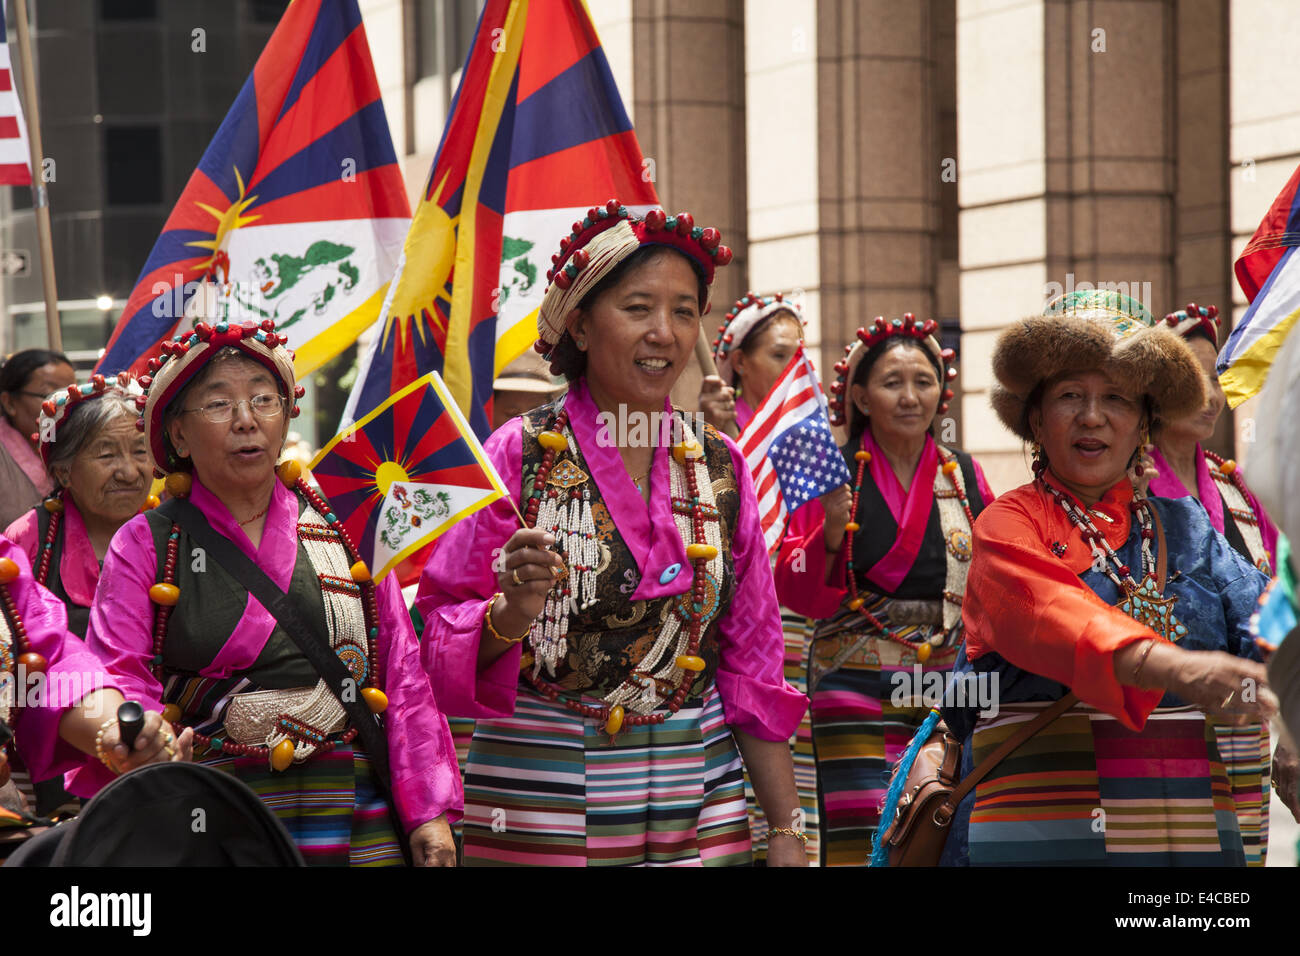 Les tibétains en mars dans les immigrants internationaux défilent à New York exprimer leur patrimoine ancien profondément spirituelle. Banque D'Images